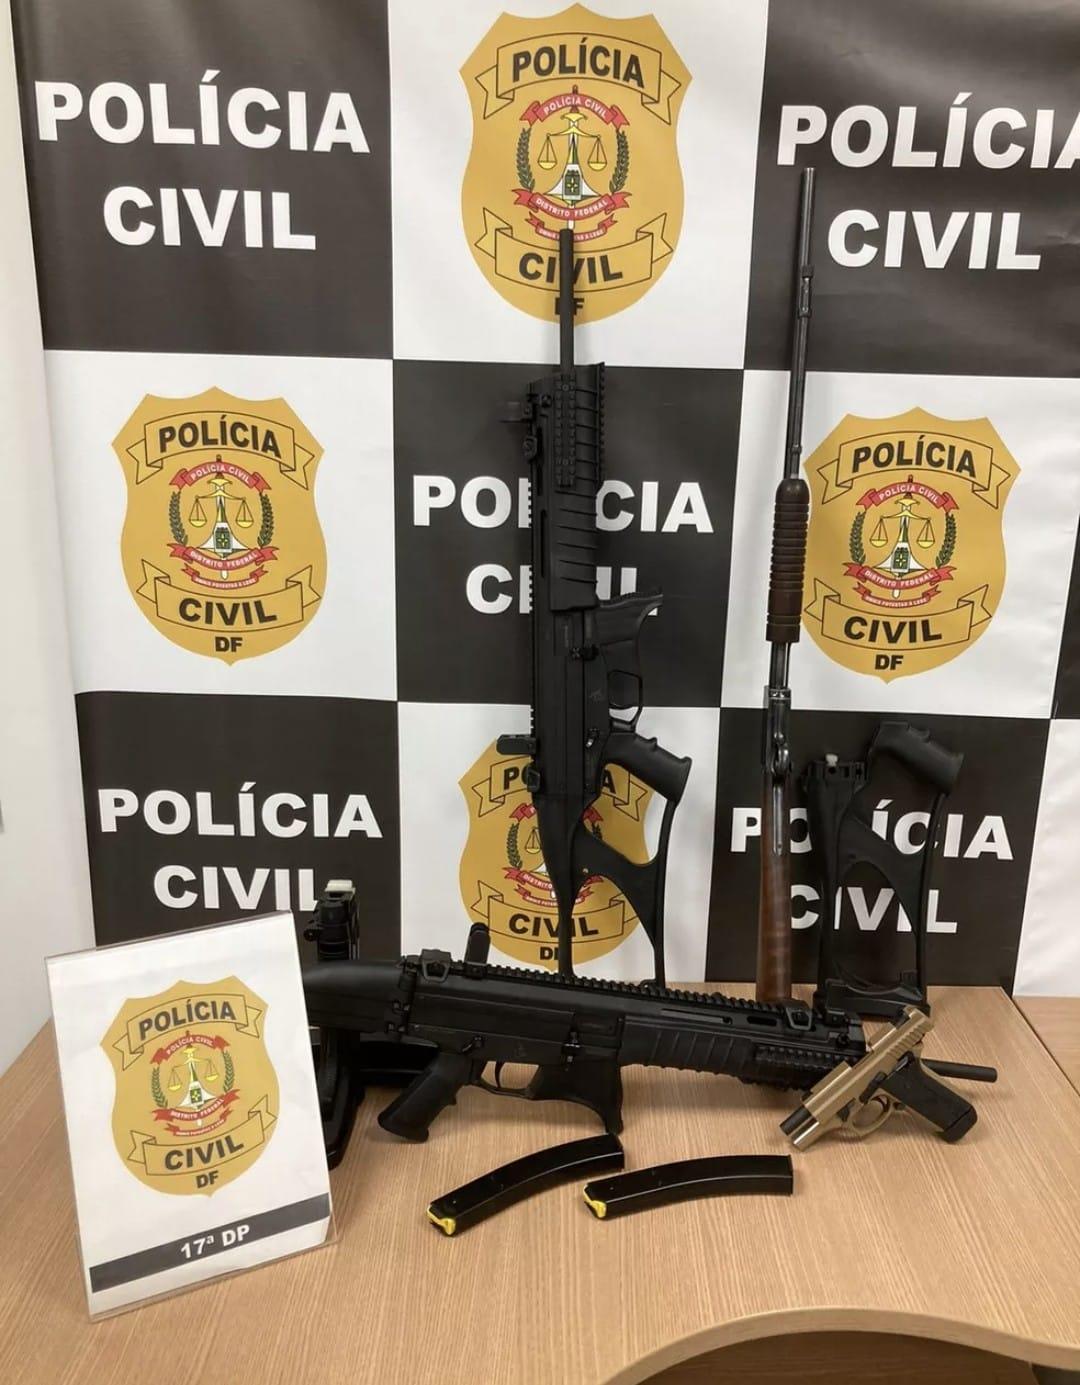 Foto das armas apreendidas no Distrito Federal no caso 